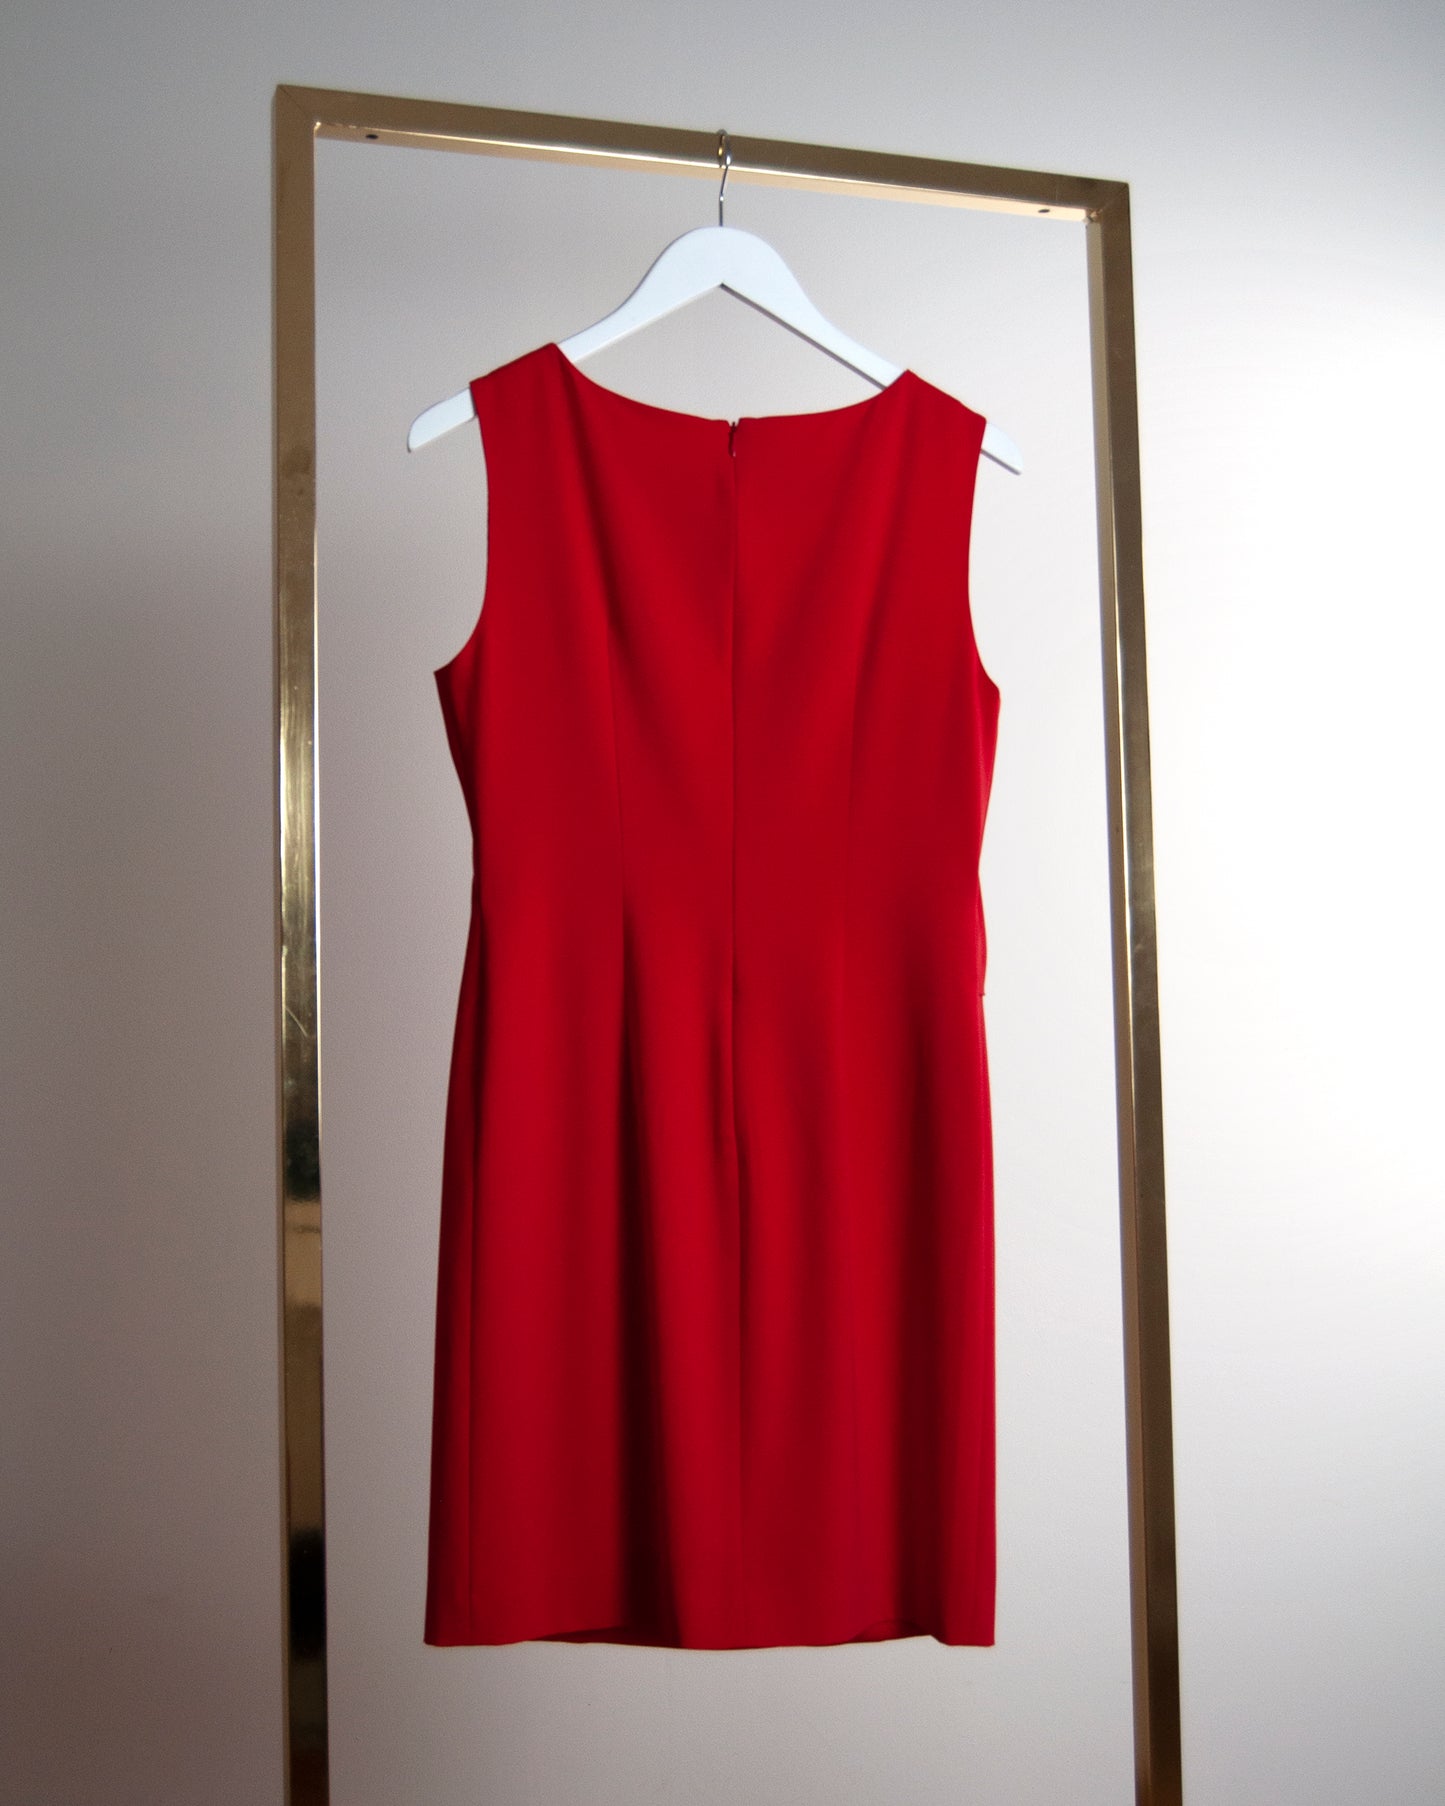 Vestido rojo Moschino Cheap & Chic